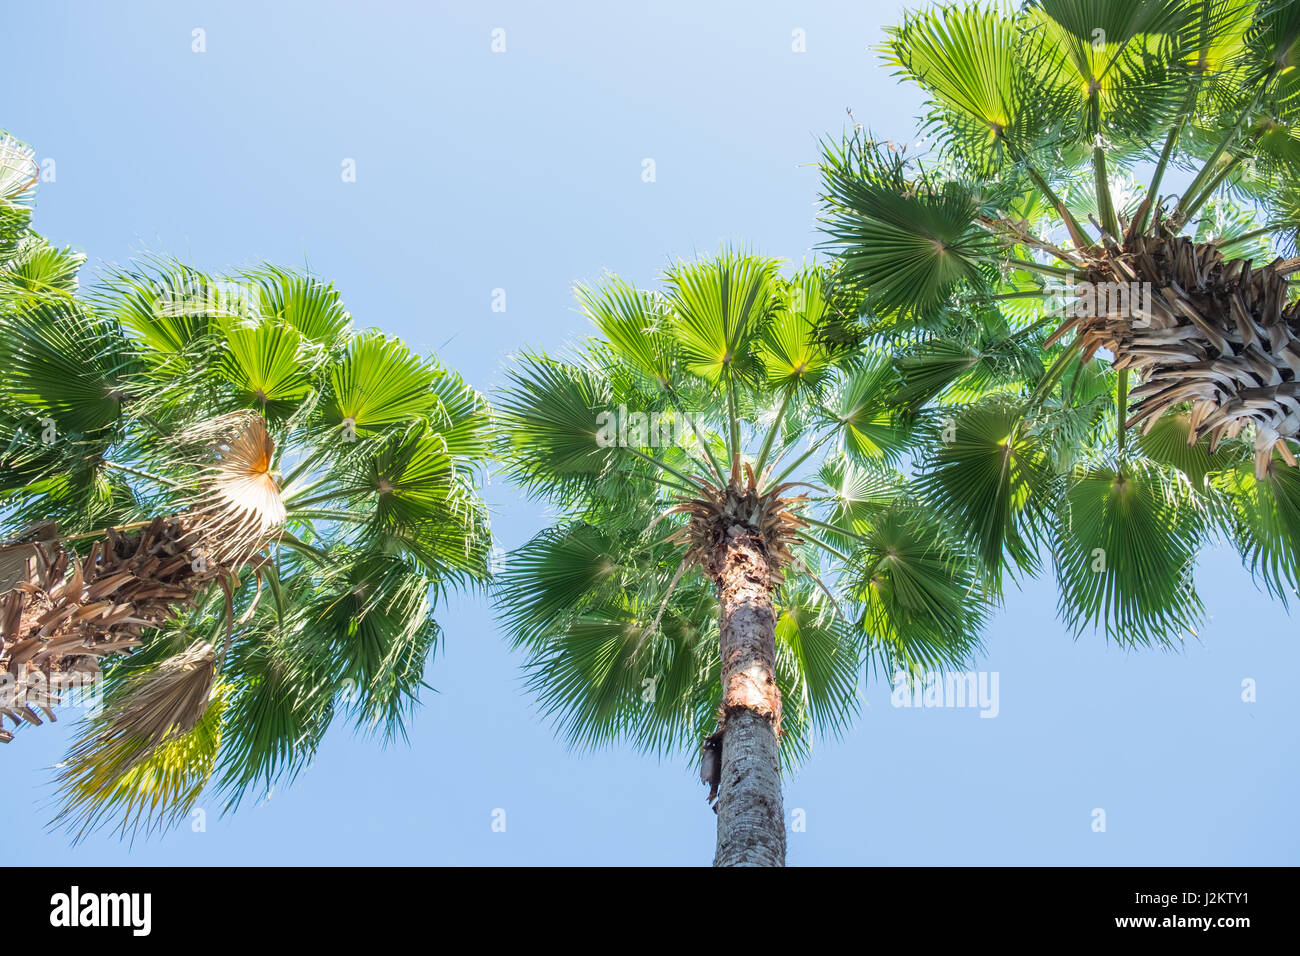 Palmiers Vue de dessous avec fond de ciel bleu Banque D'Images